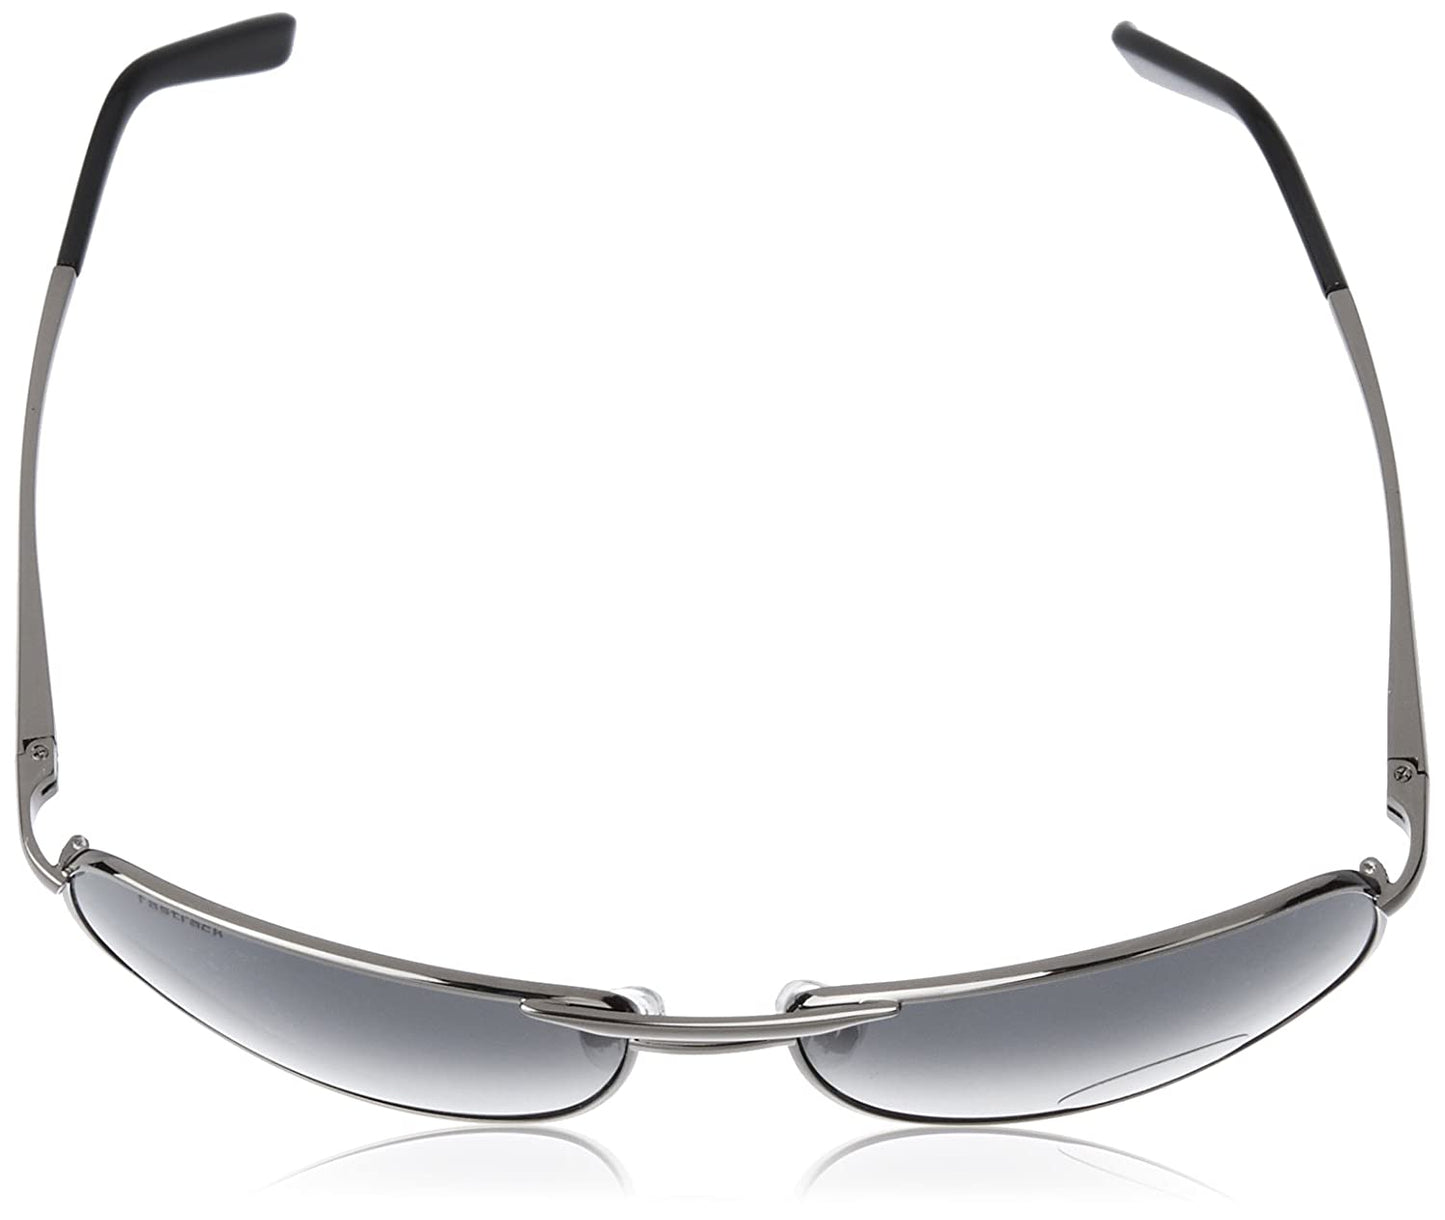 Fastrack Navigator Sunglasses Silver Frame Black Lens M032BK2